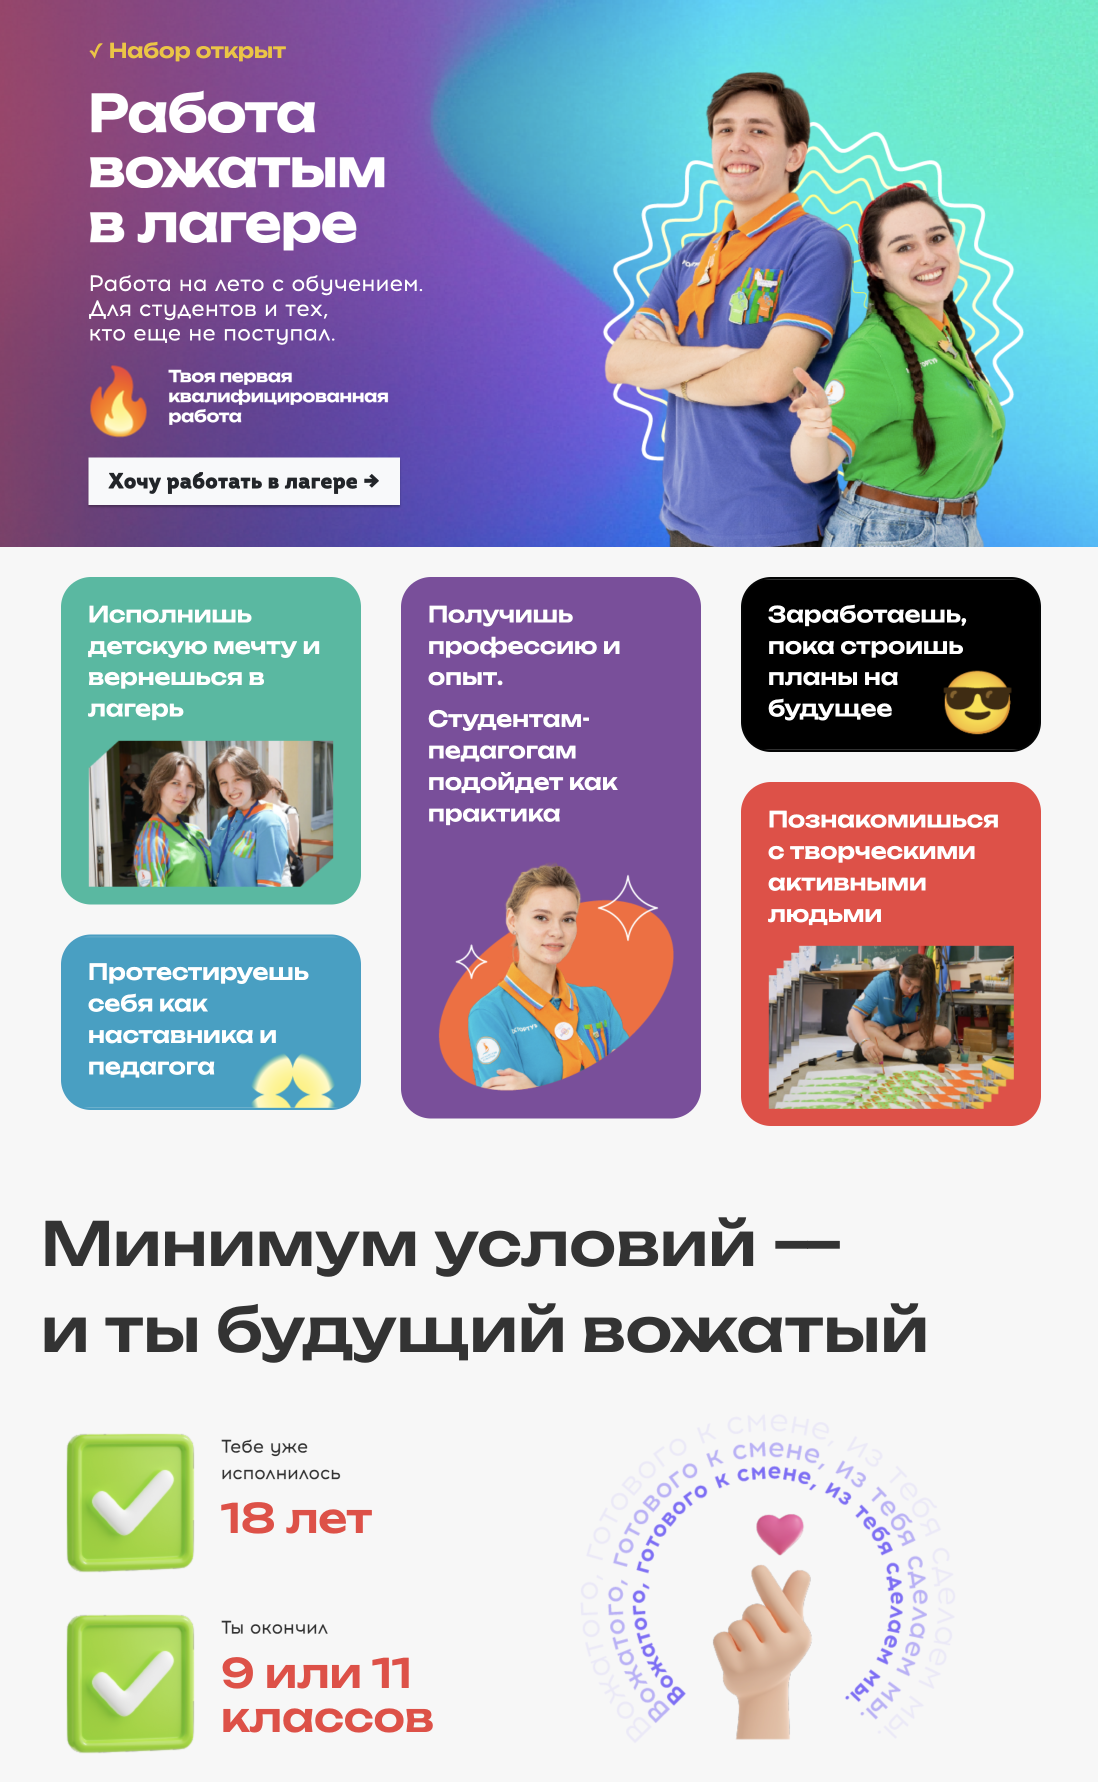 Сайт школы вожатых, на котором я оставила заявку. Источник: mosgortur.ru